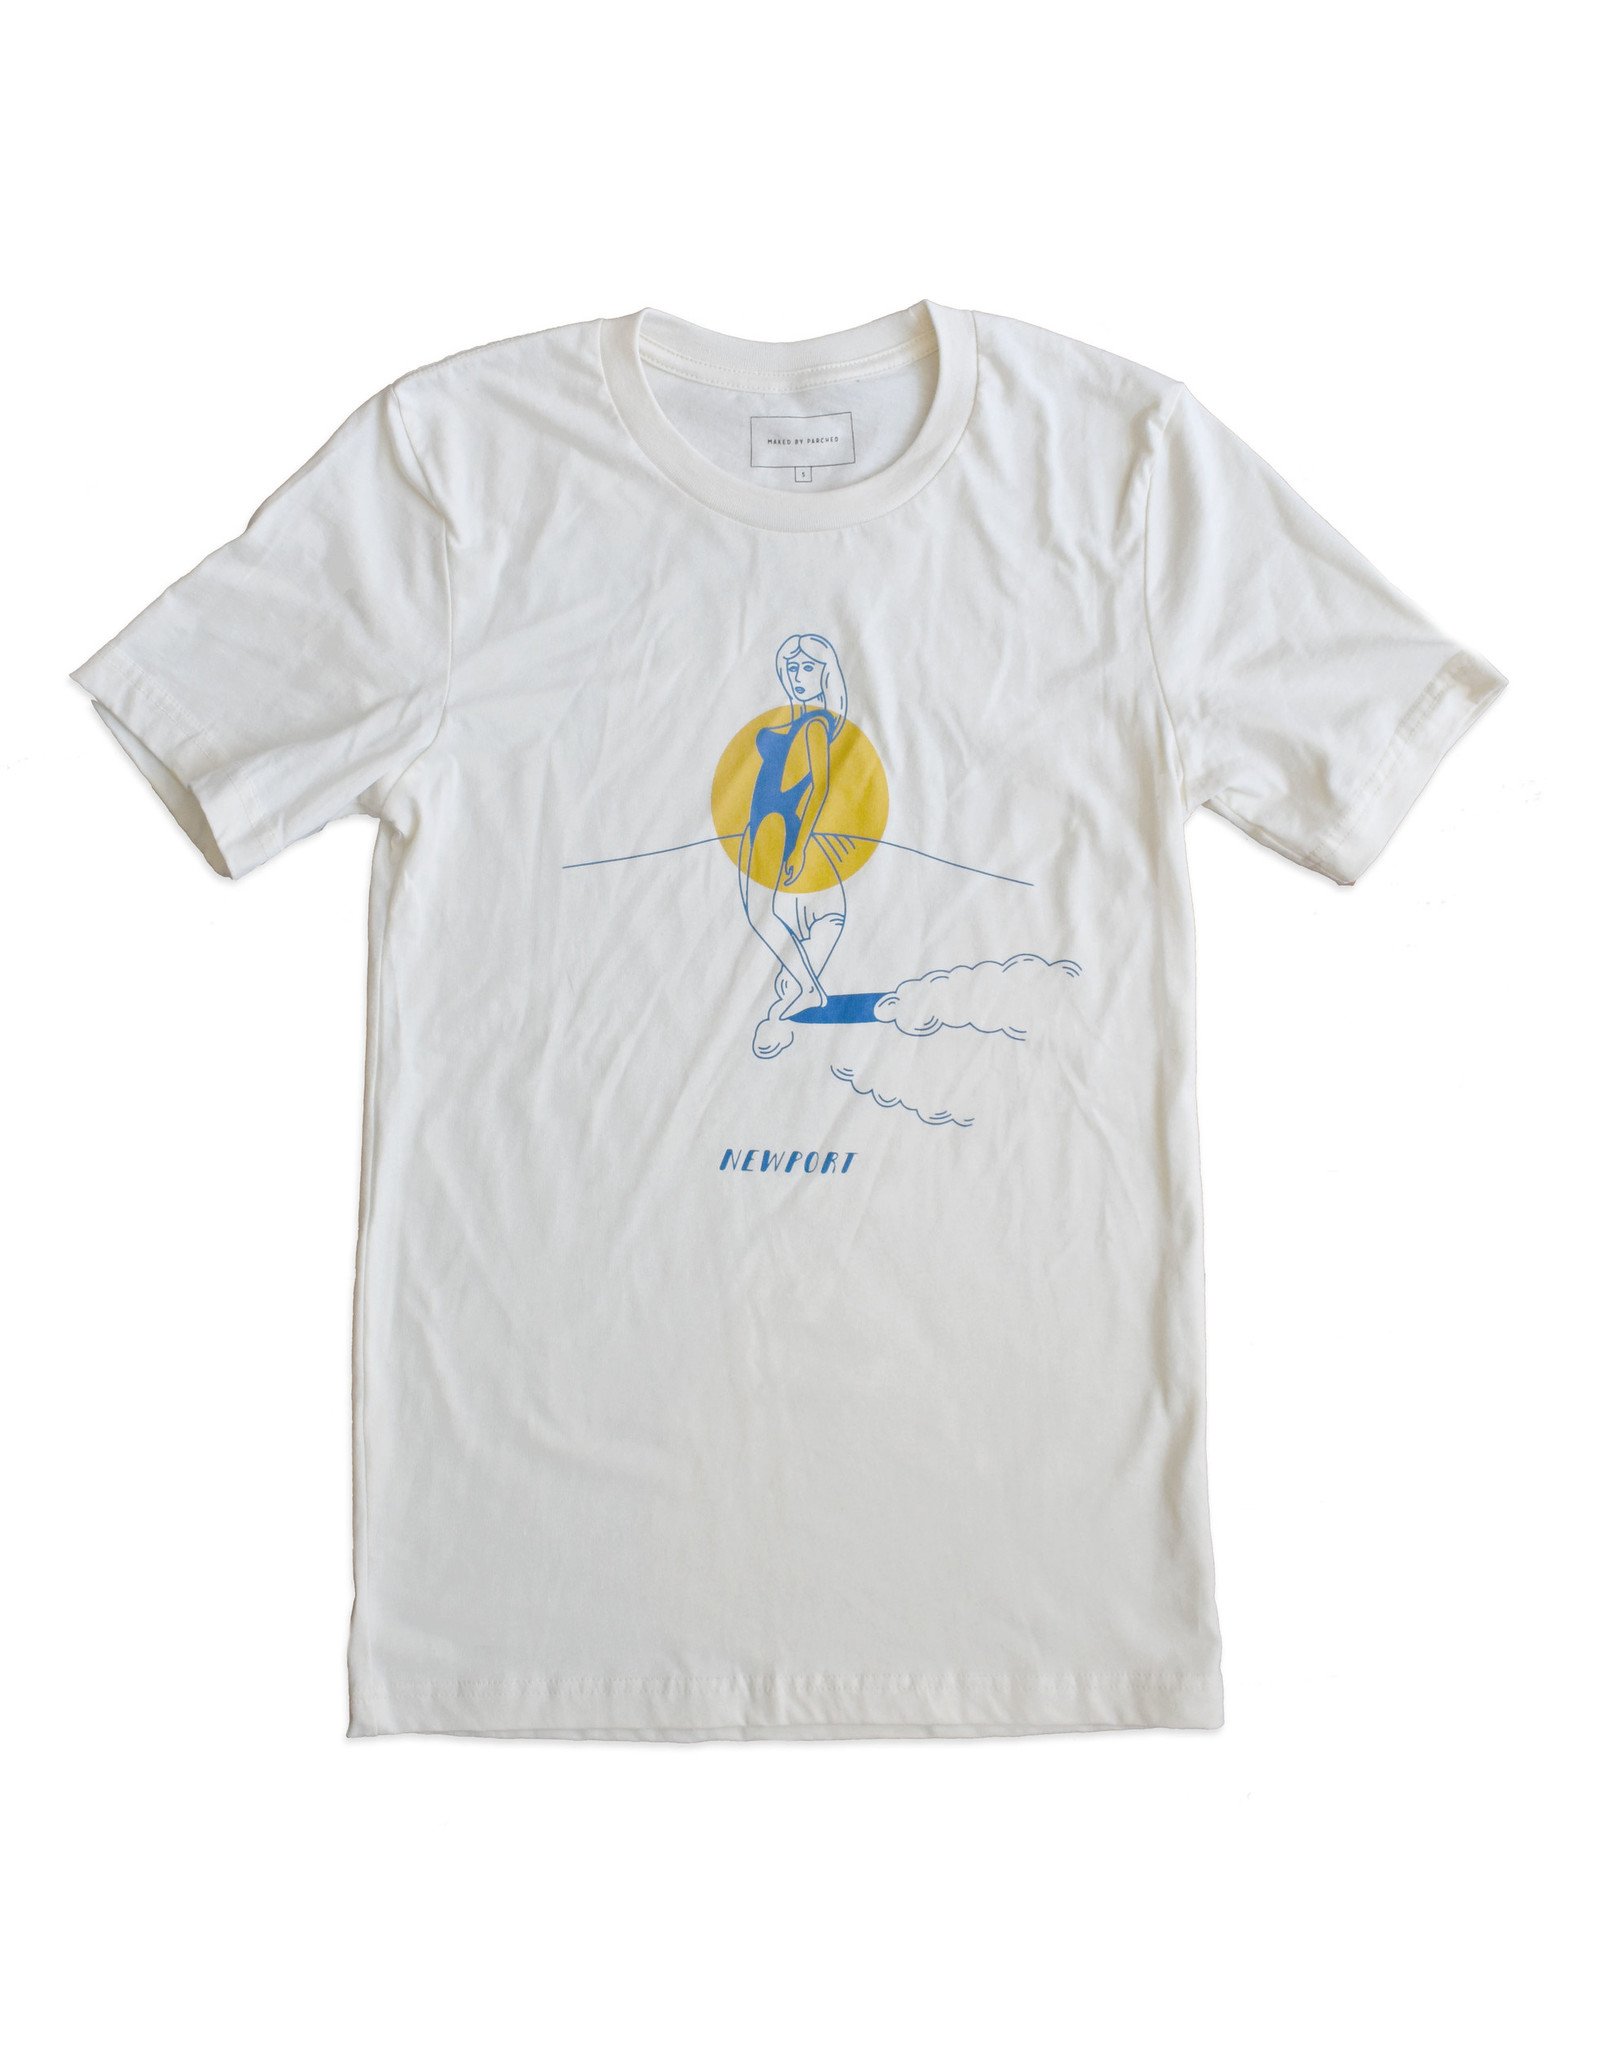 Newport Surfer T-Shirt